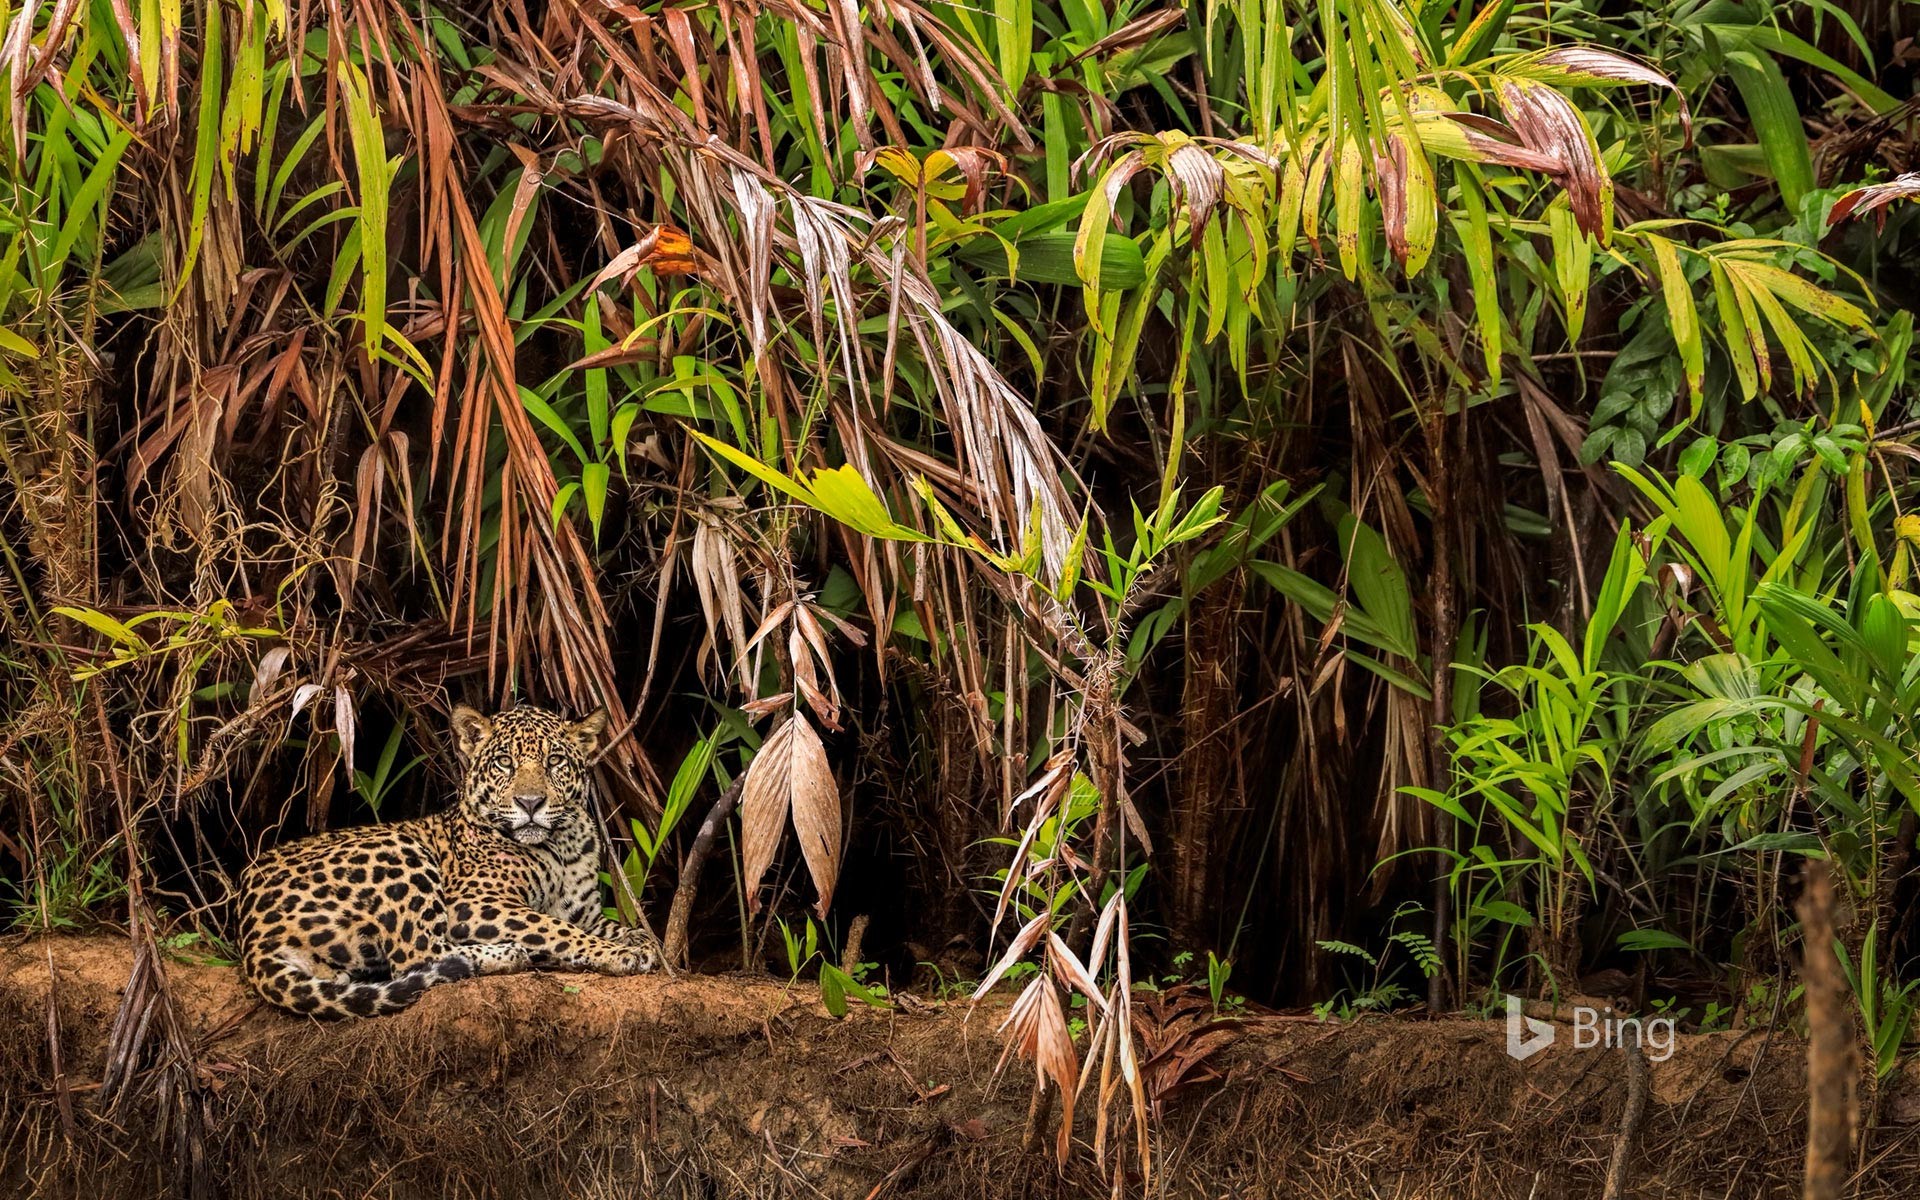 Jaguar in the Pantanal wetlands, Brazil